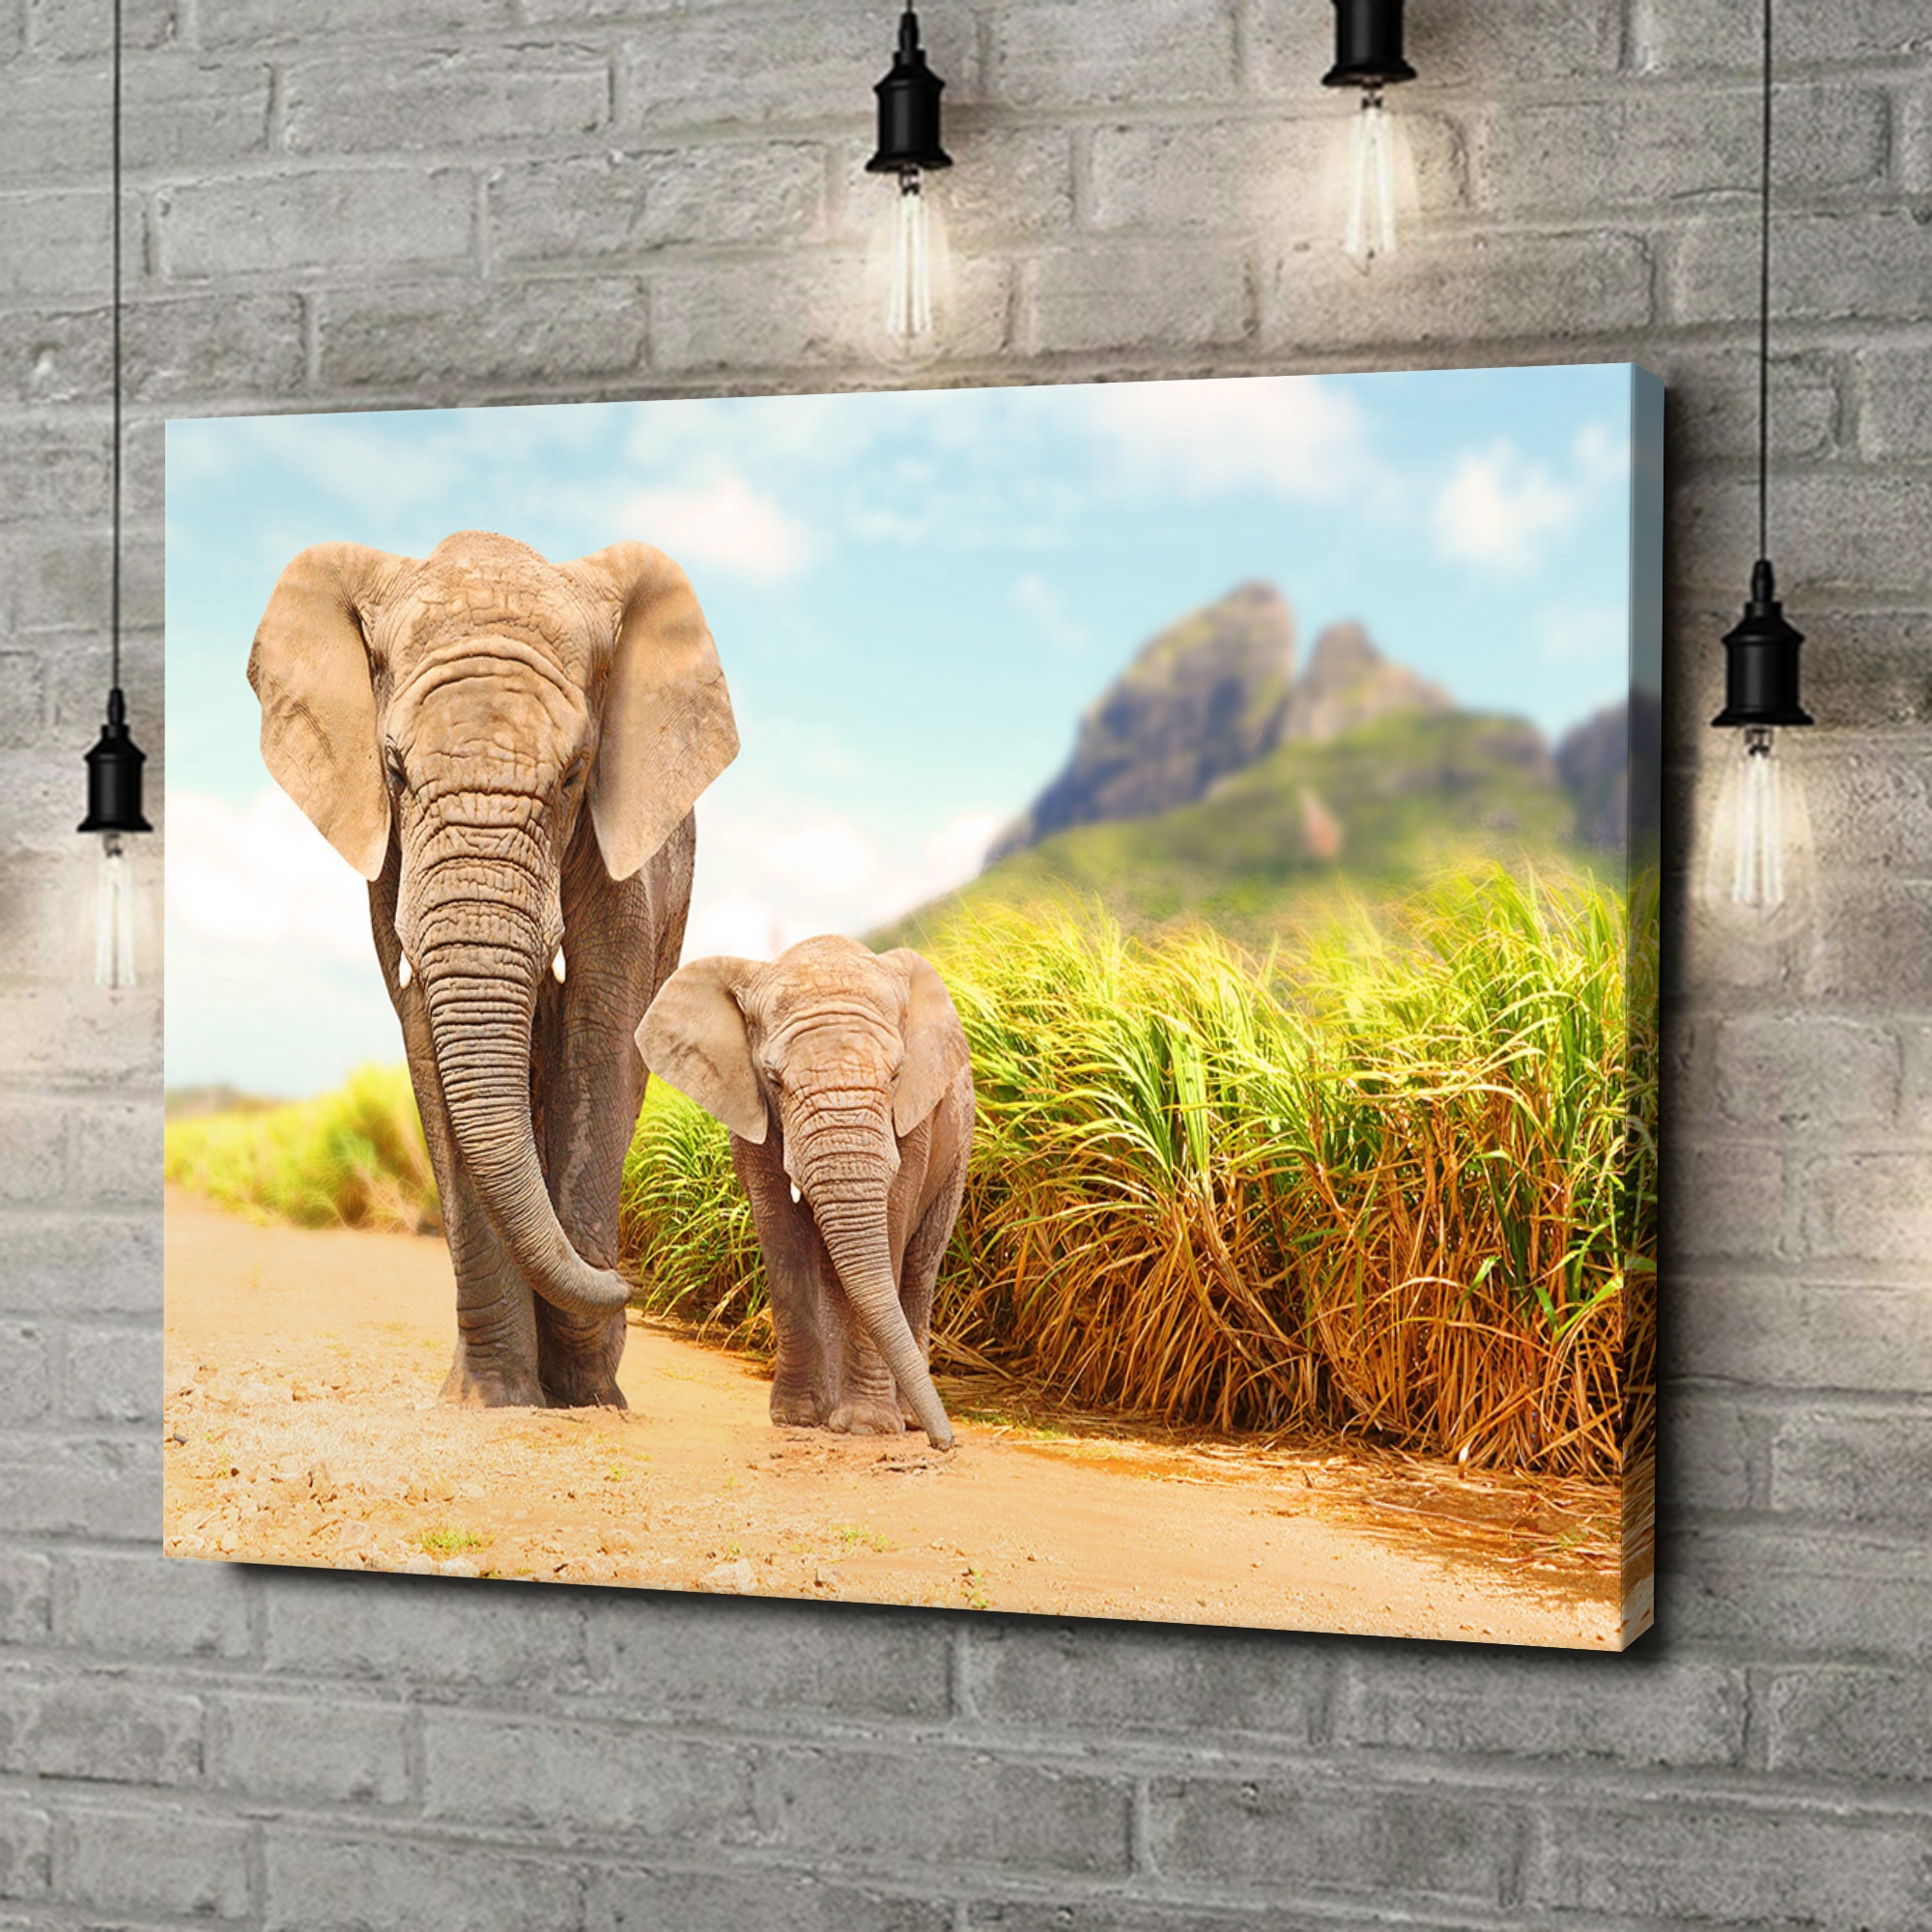 Liebesleinwand als Geschenk Elefanten in Afrika